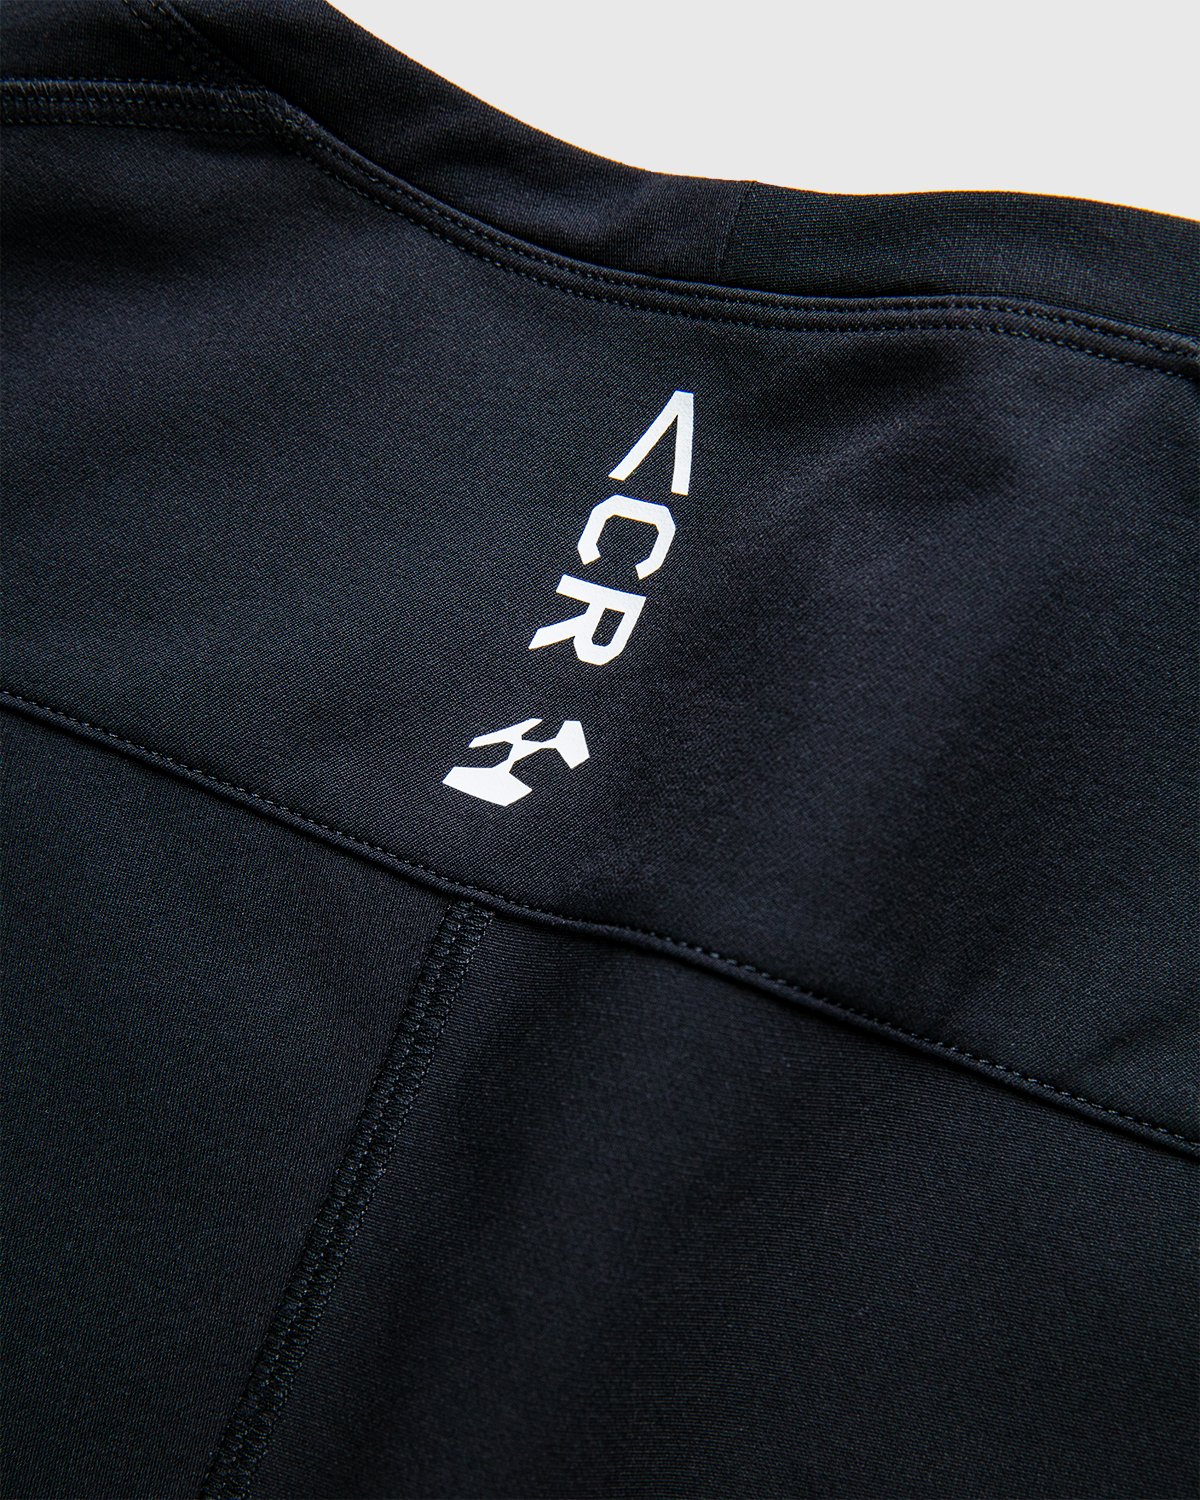 ACRONYM - S24-DS Short Sleeve Black - Clothing - Black - Image 7